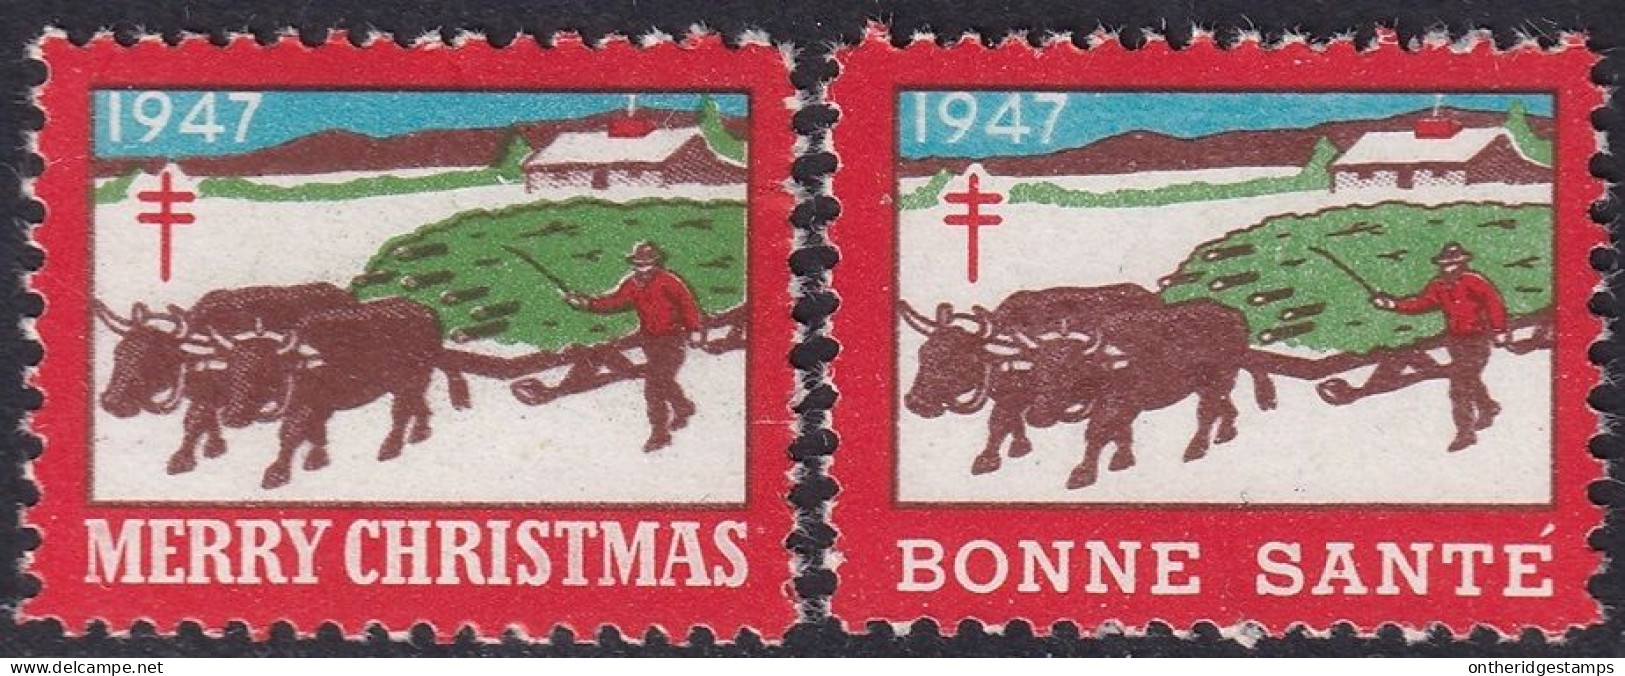 Canada 1947  Christmas Seal Set MNH** - Werbemarken (Vignetten)